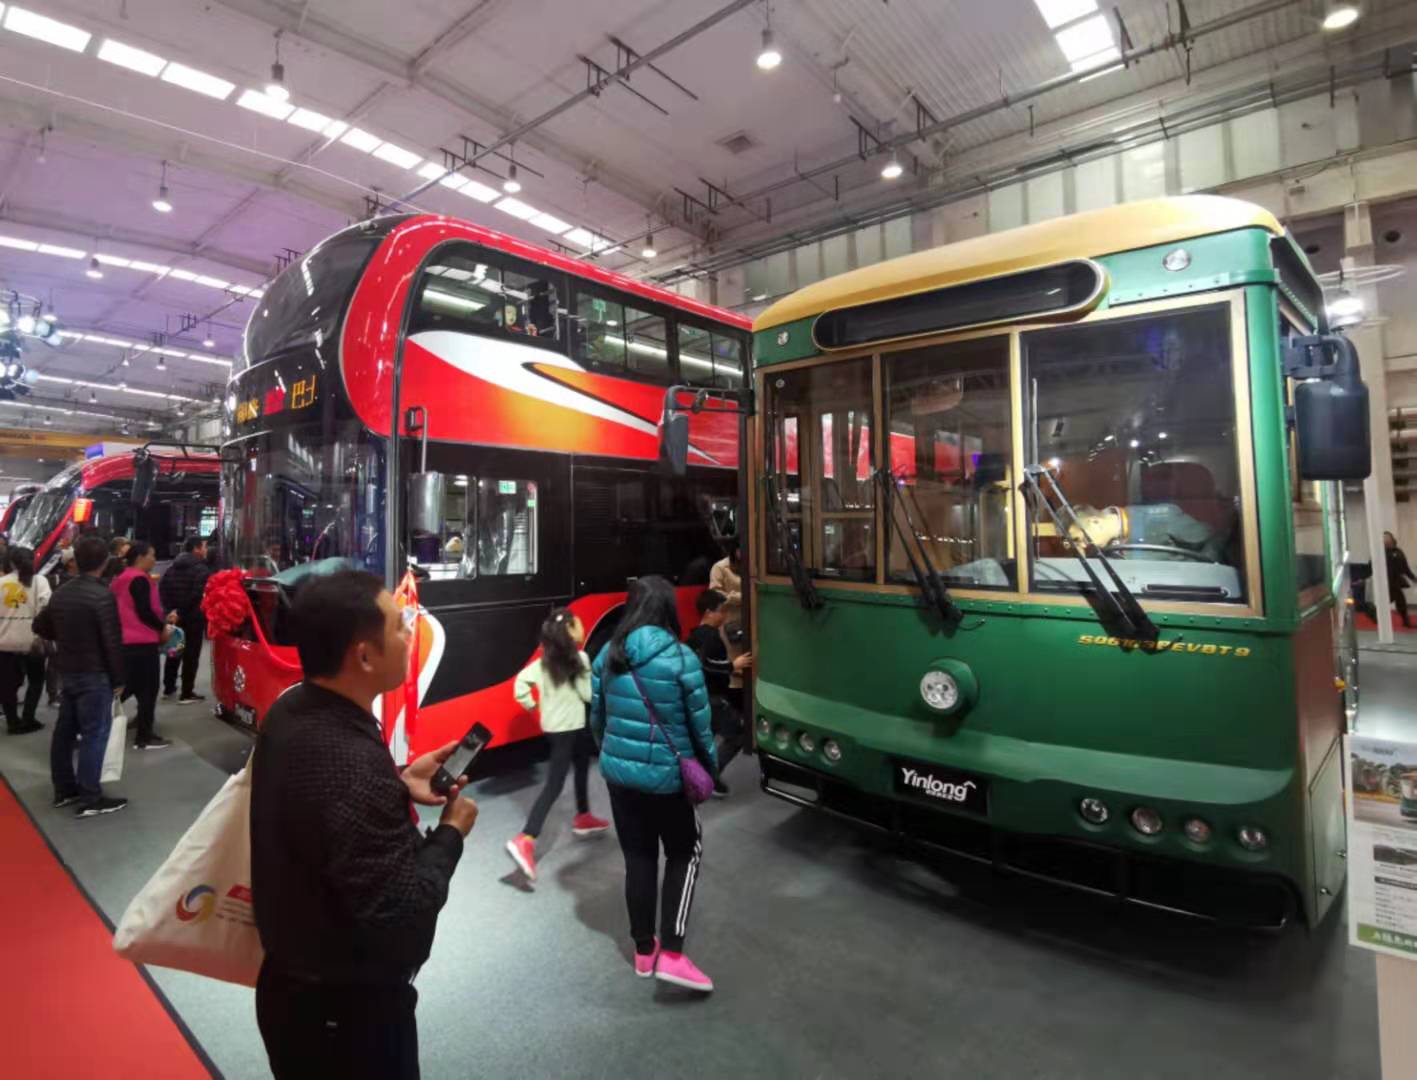 北京公交中运营的多款热门车型引人注目。新京报记者 王贵彬 摄